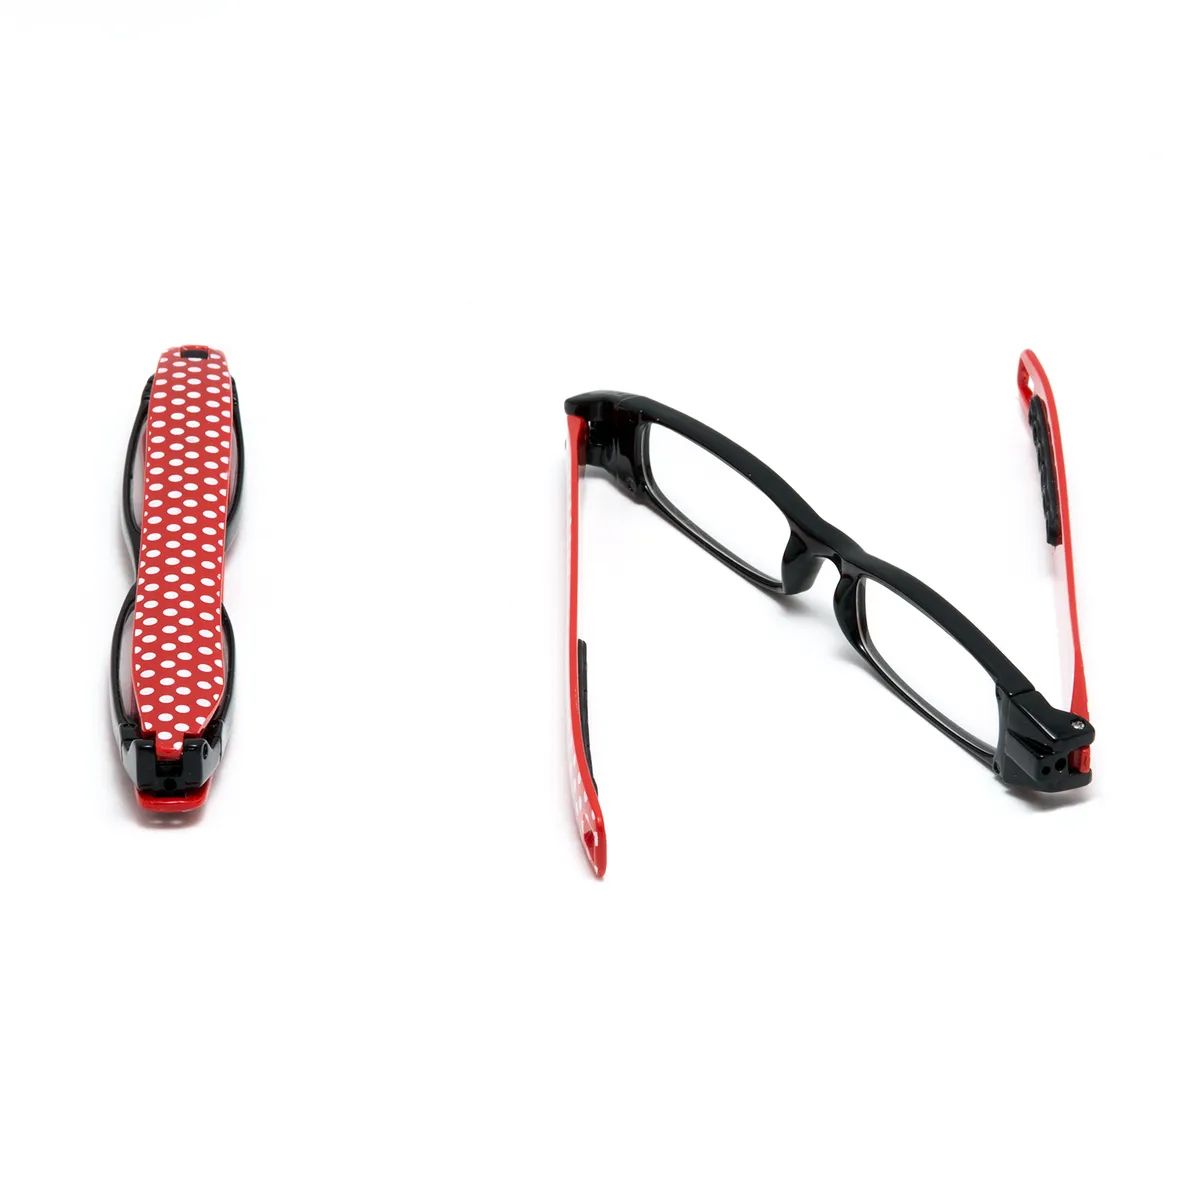 Очки корригирующие пластиковые 360 складные Onegin цвет Черный с красным +1,0